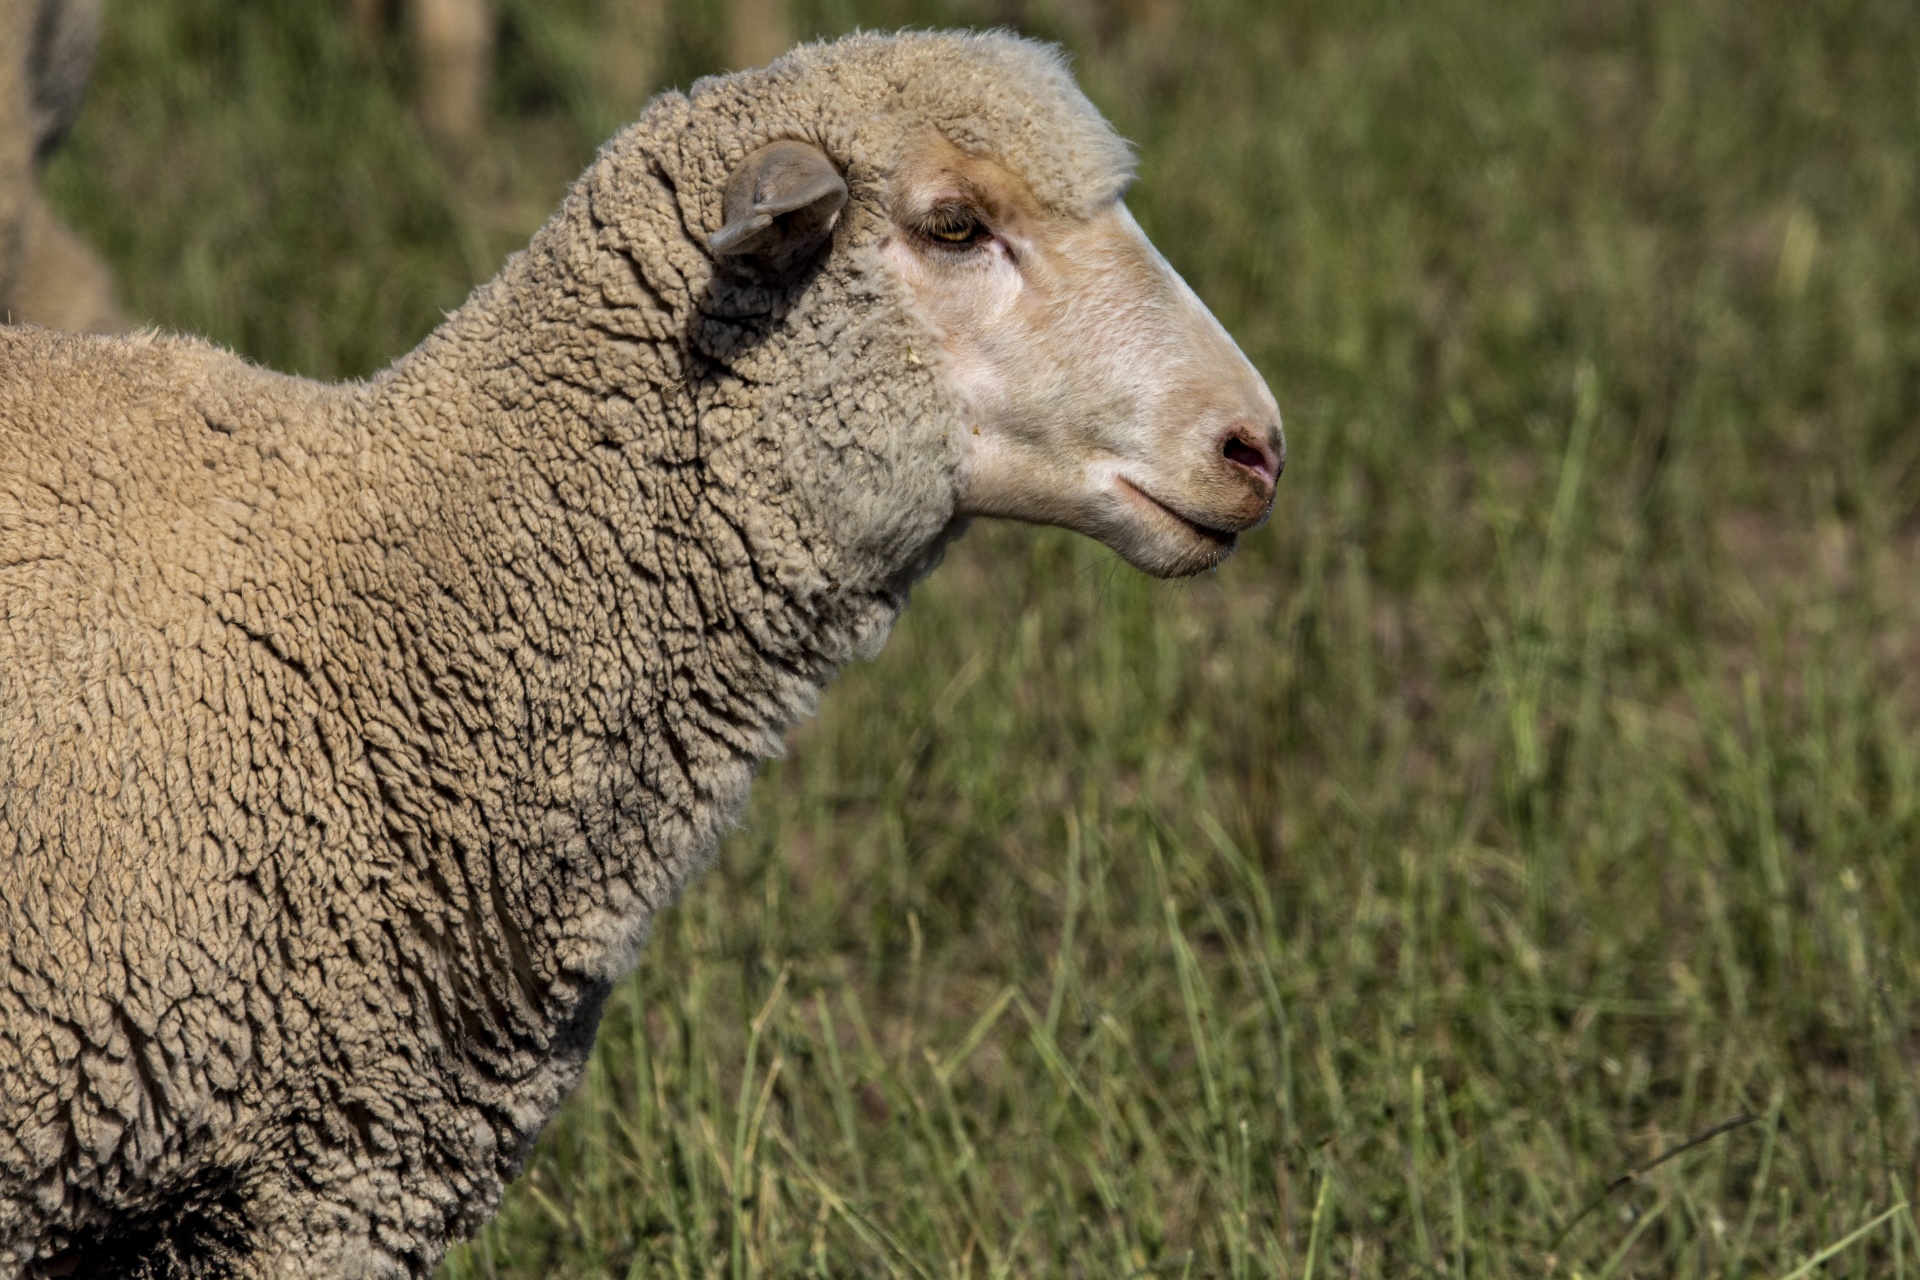 羊 無料画像 Public Domain Pictures